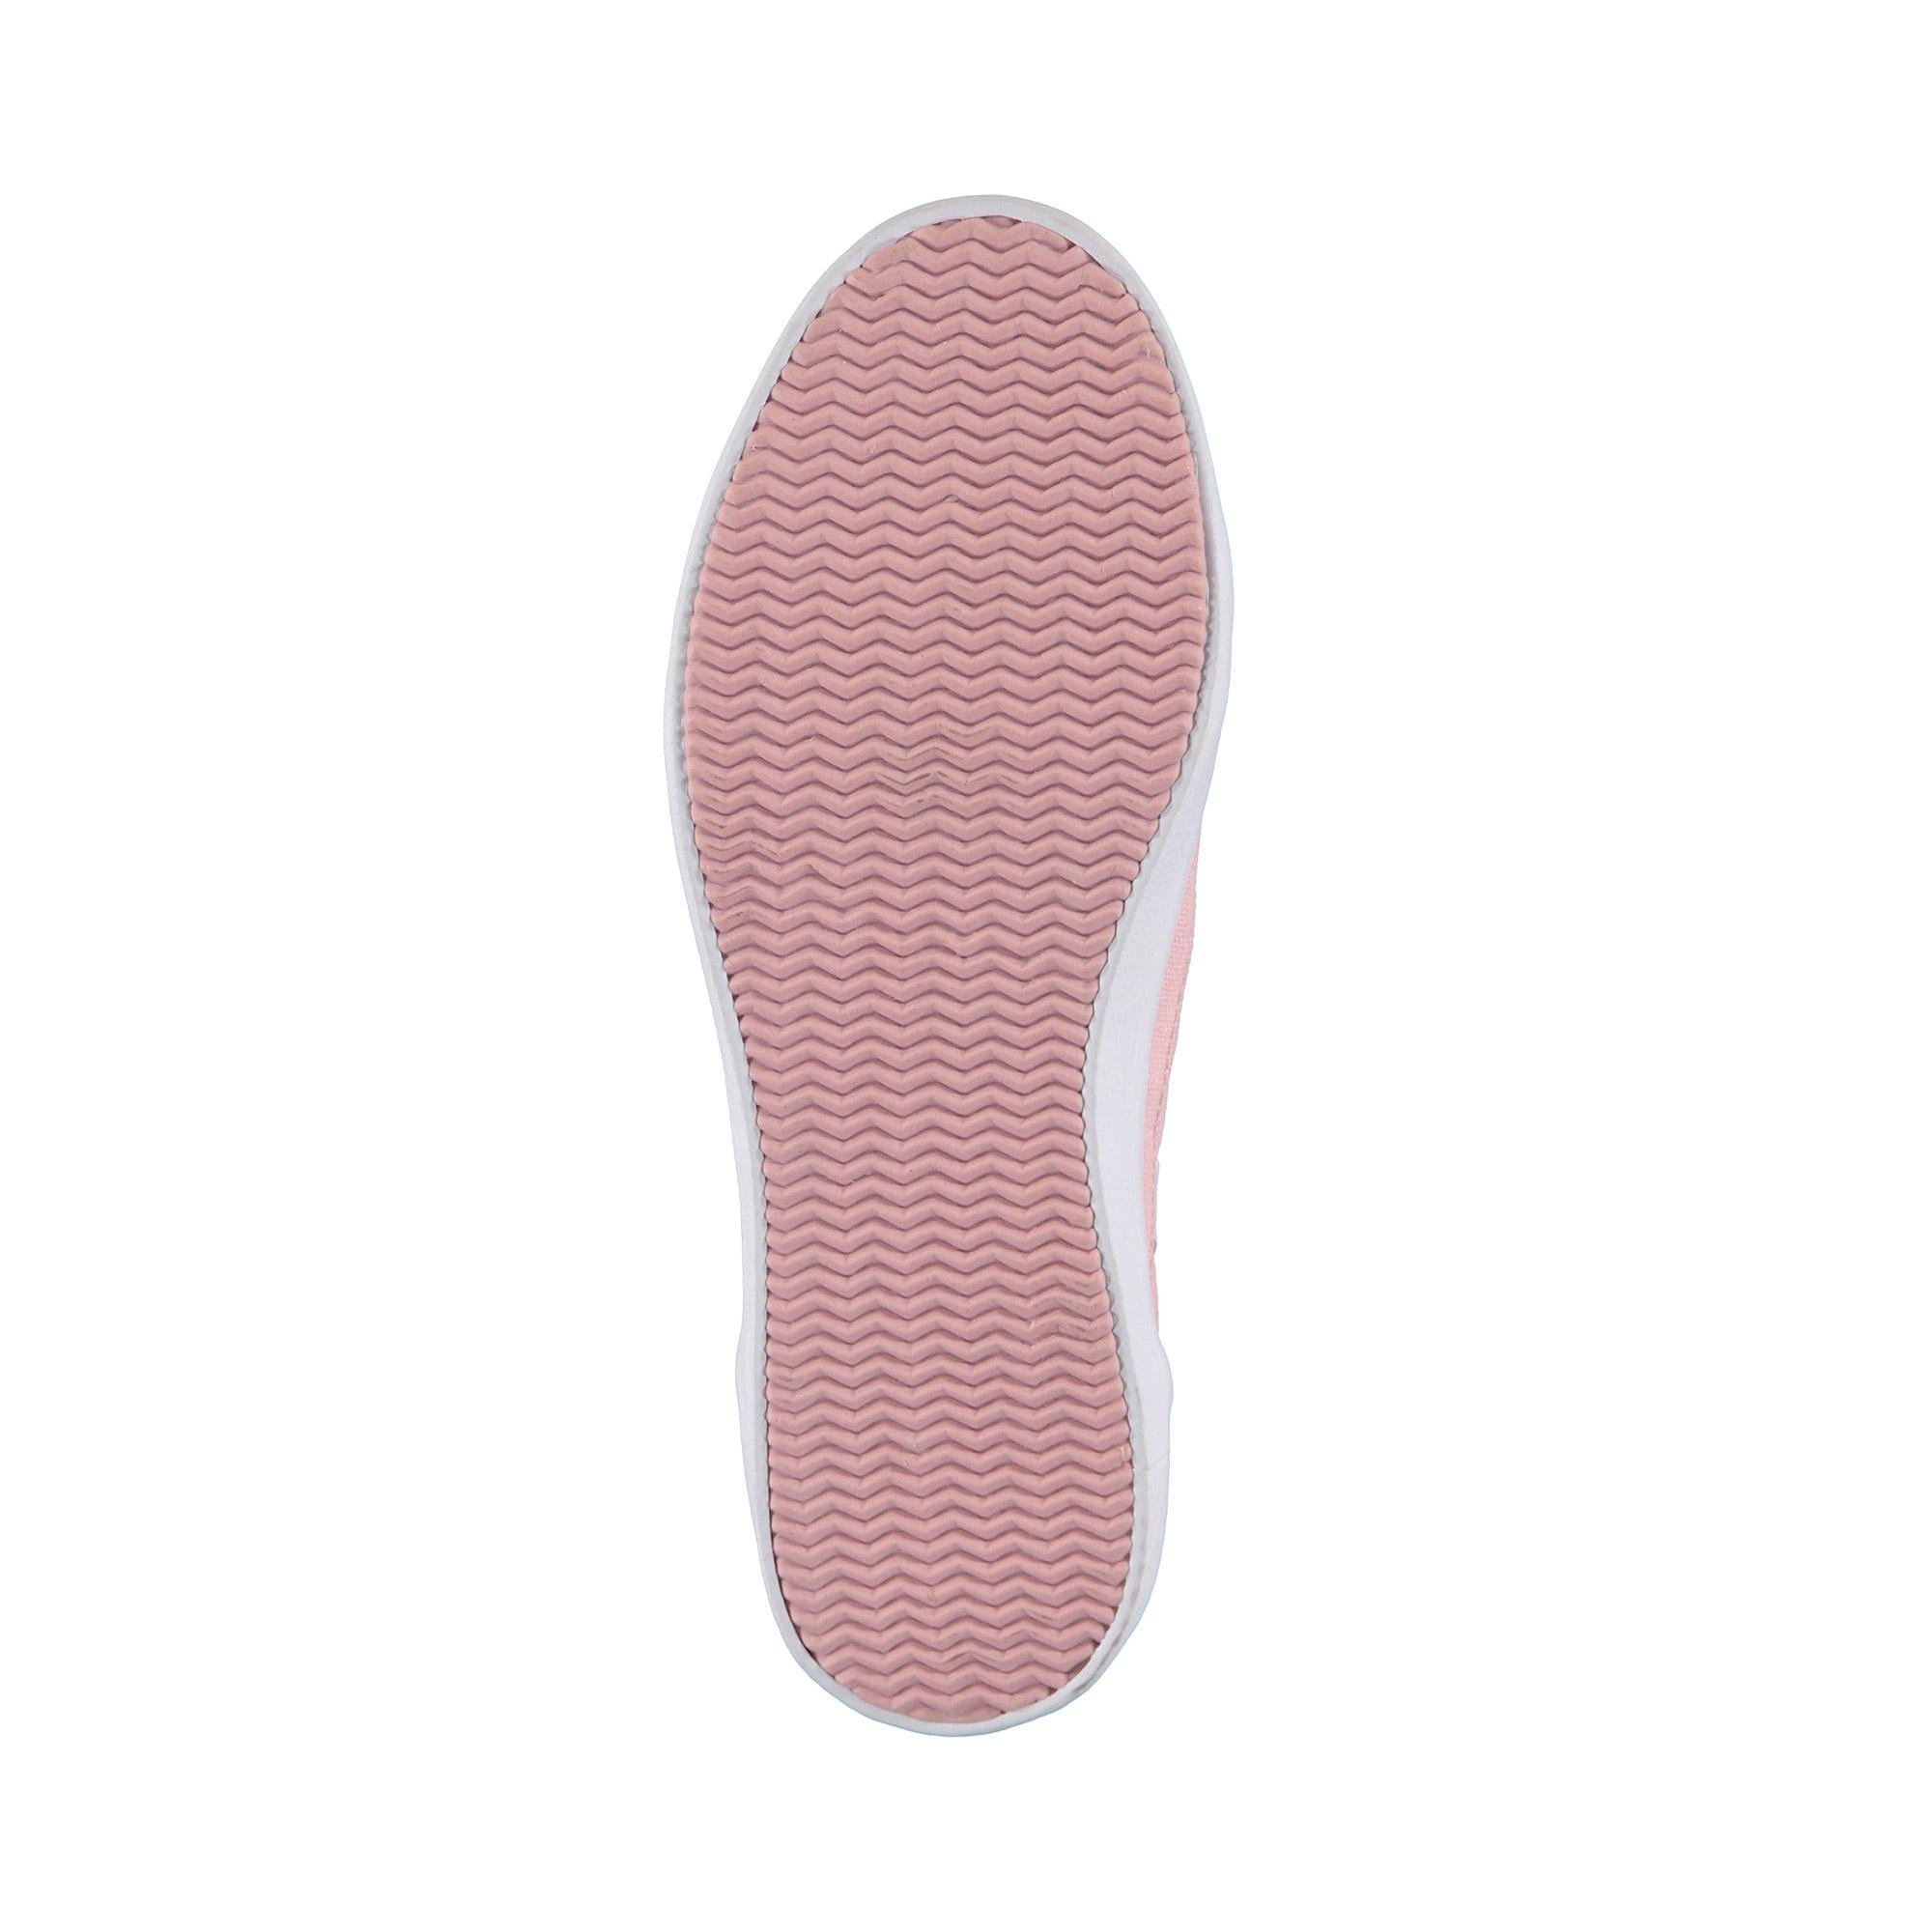 Lacoste Kadın Açık Pembe - Beyaz Sideline 119 1 Casual Ayakkabı